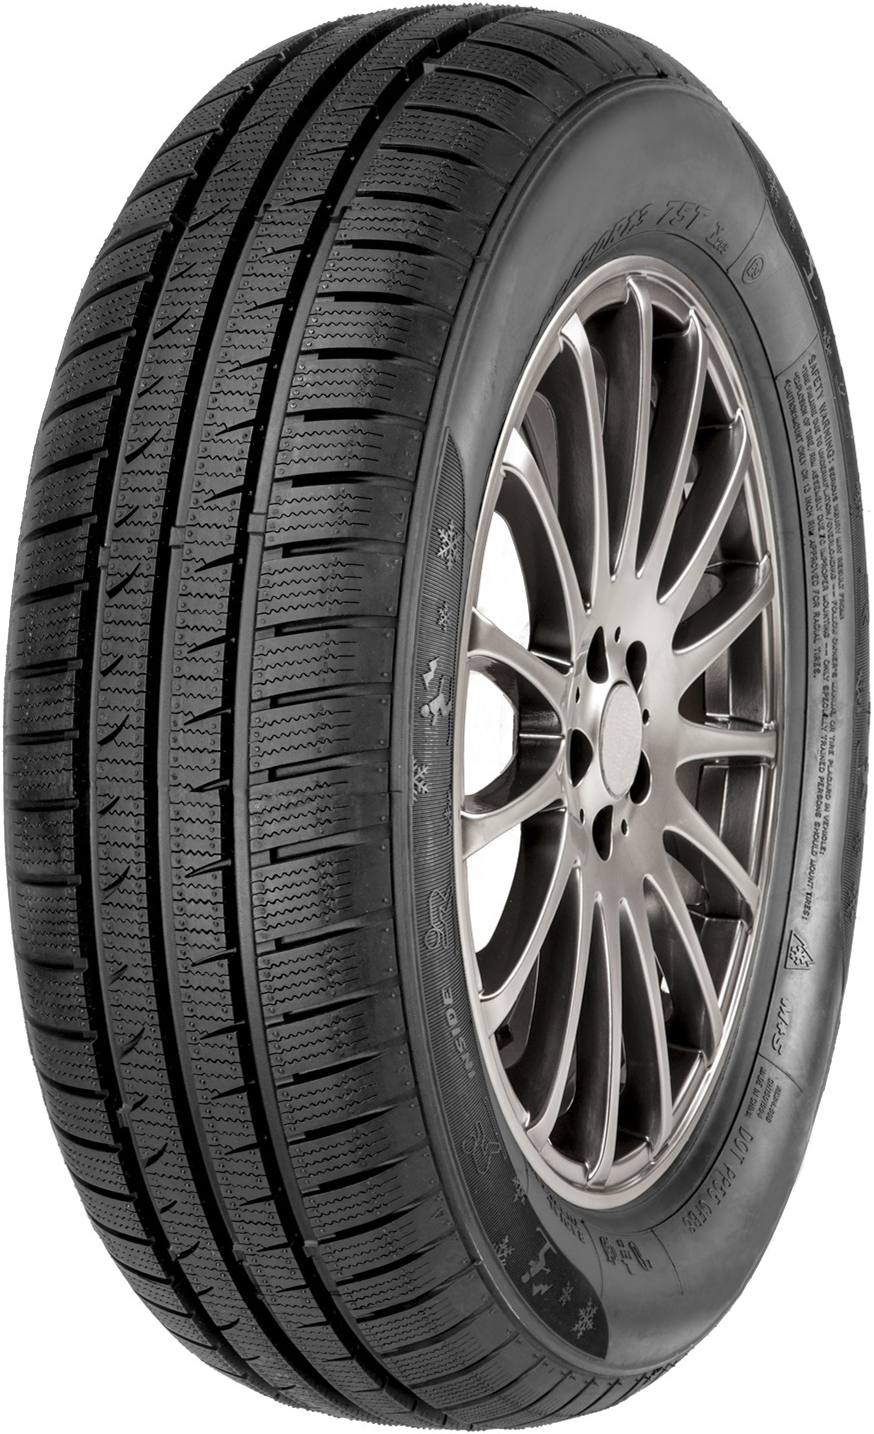 Автомобилни гуми ATLAS POLARBEAR HP 205/65 R15 94H